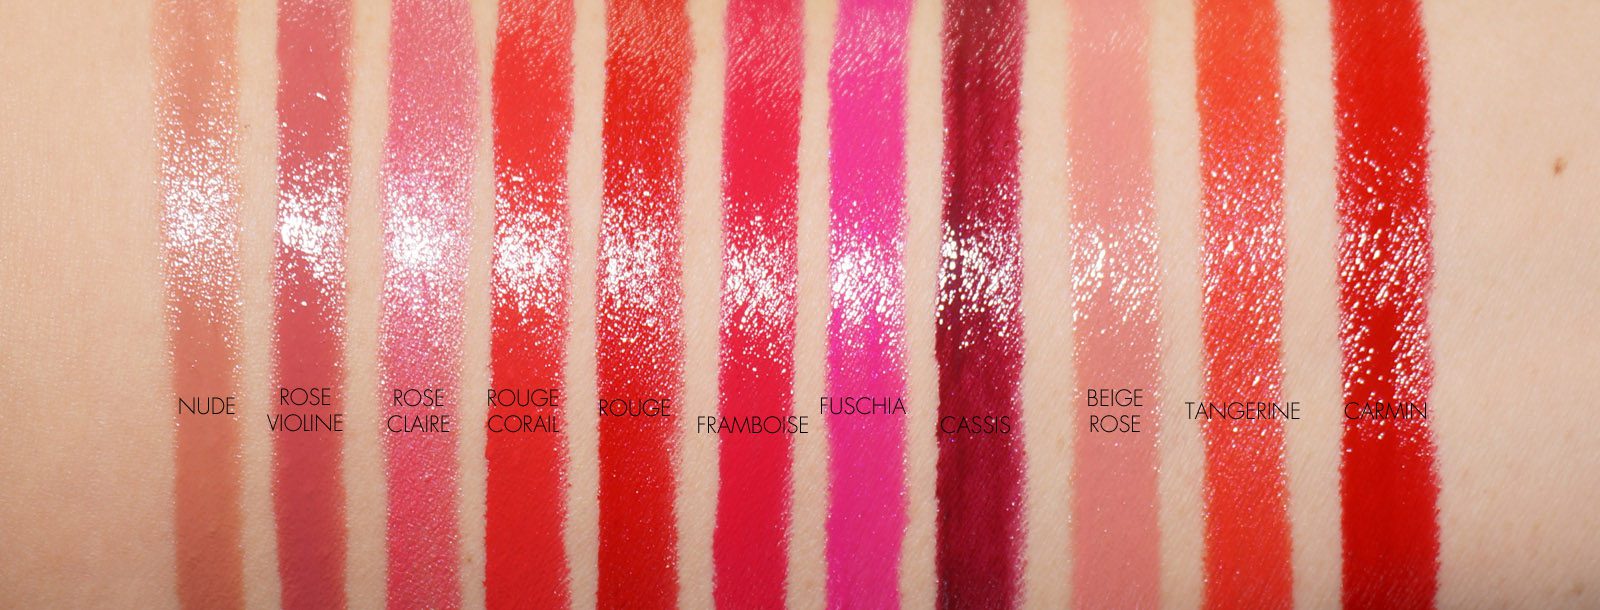 Chanel Le Rouge crayon de couleur - swatches & review